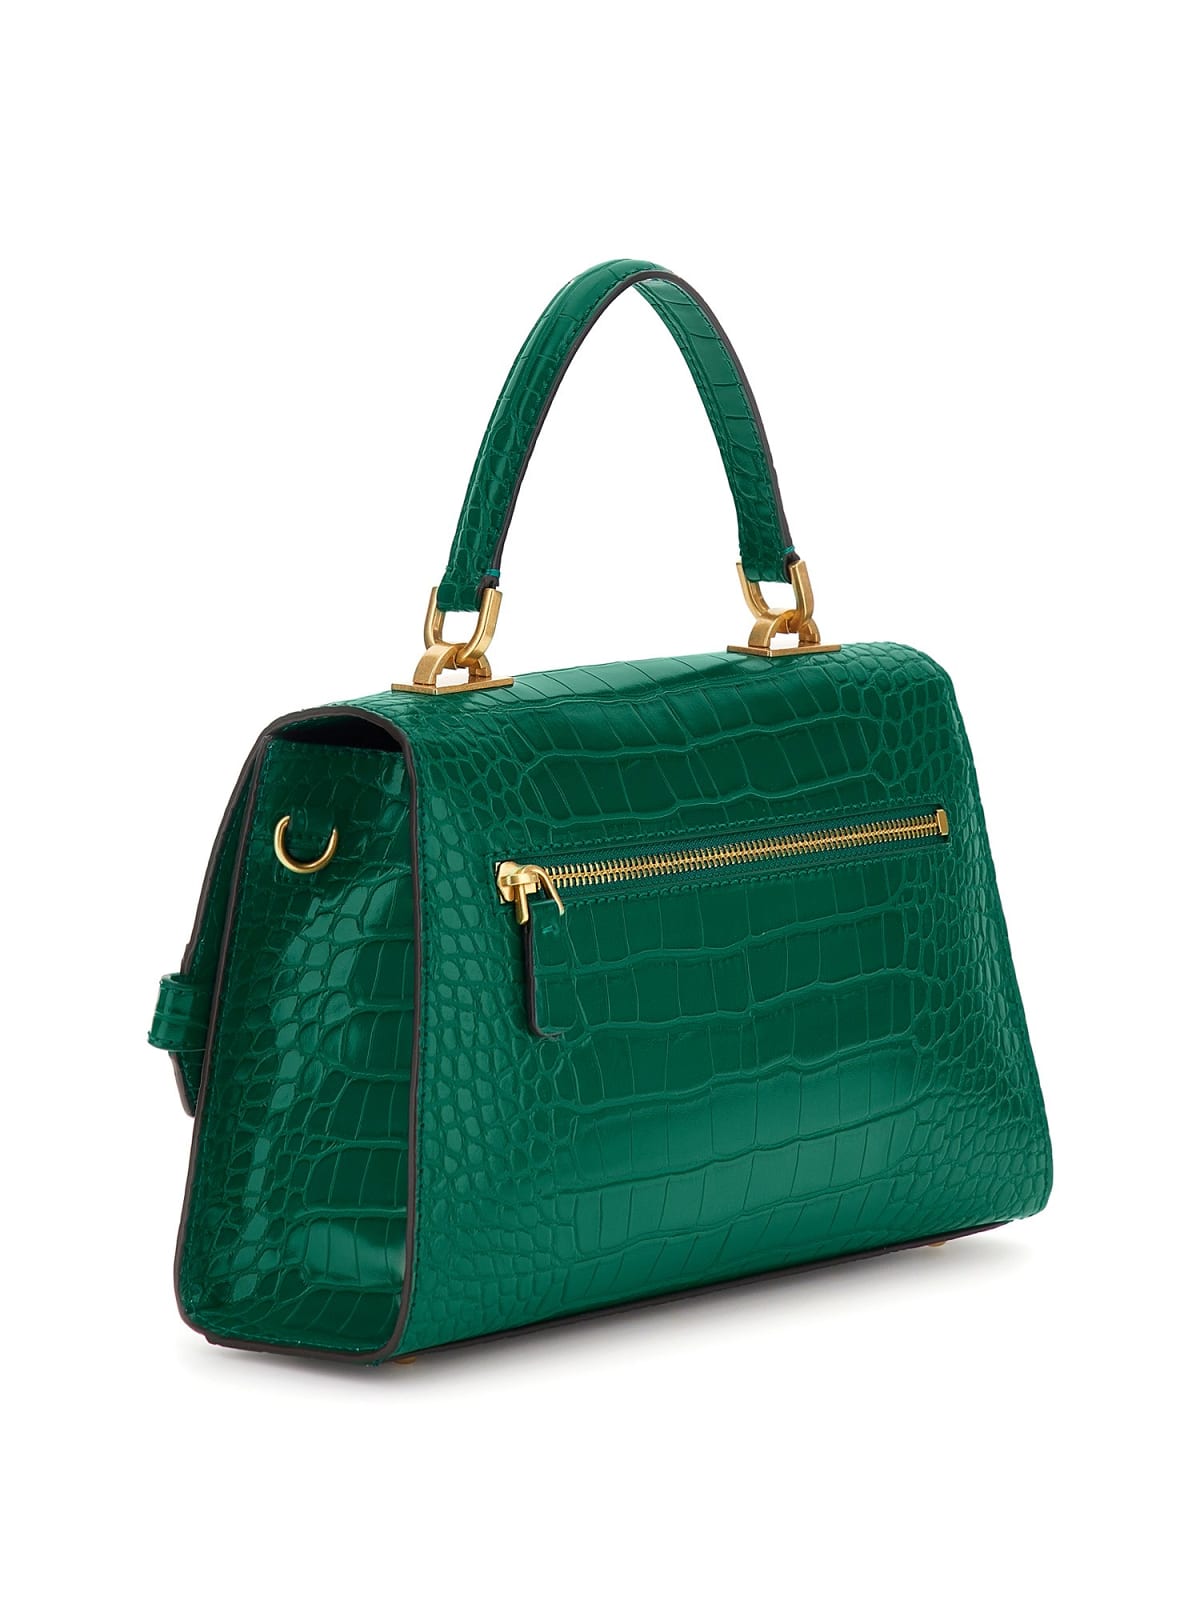 Sac Bandoulière Guess Sestri Luxury Satchel Emerald CX898520